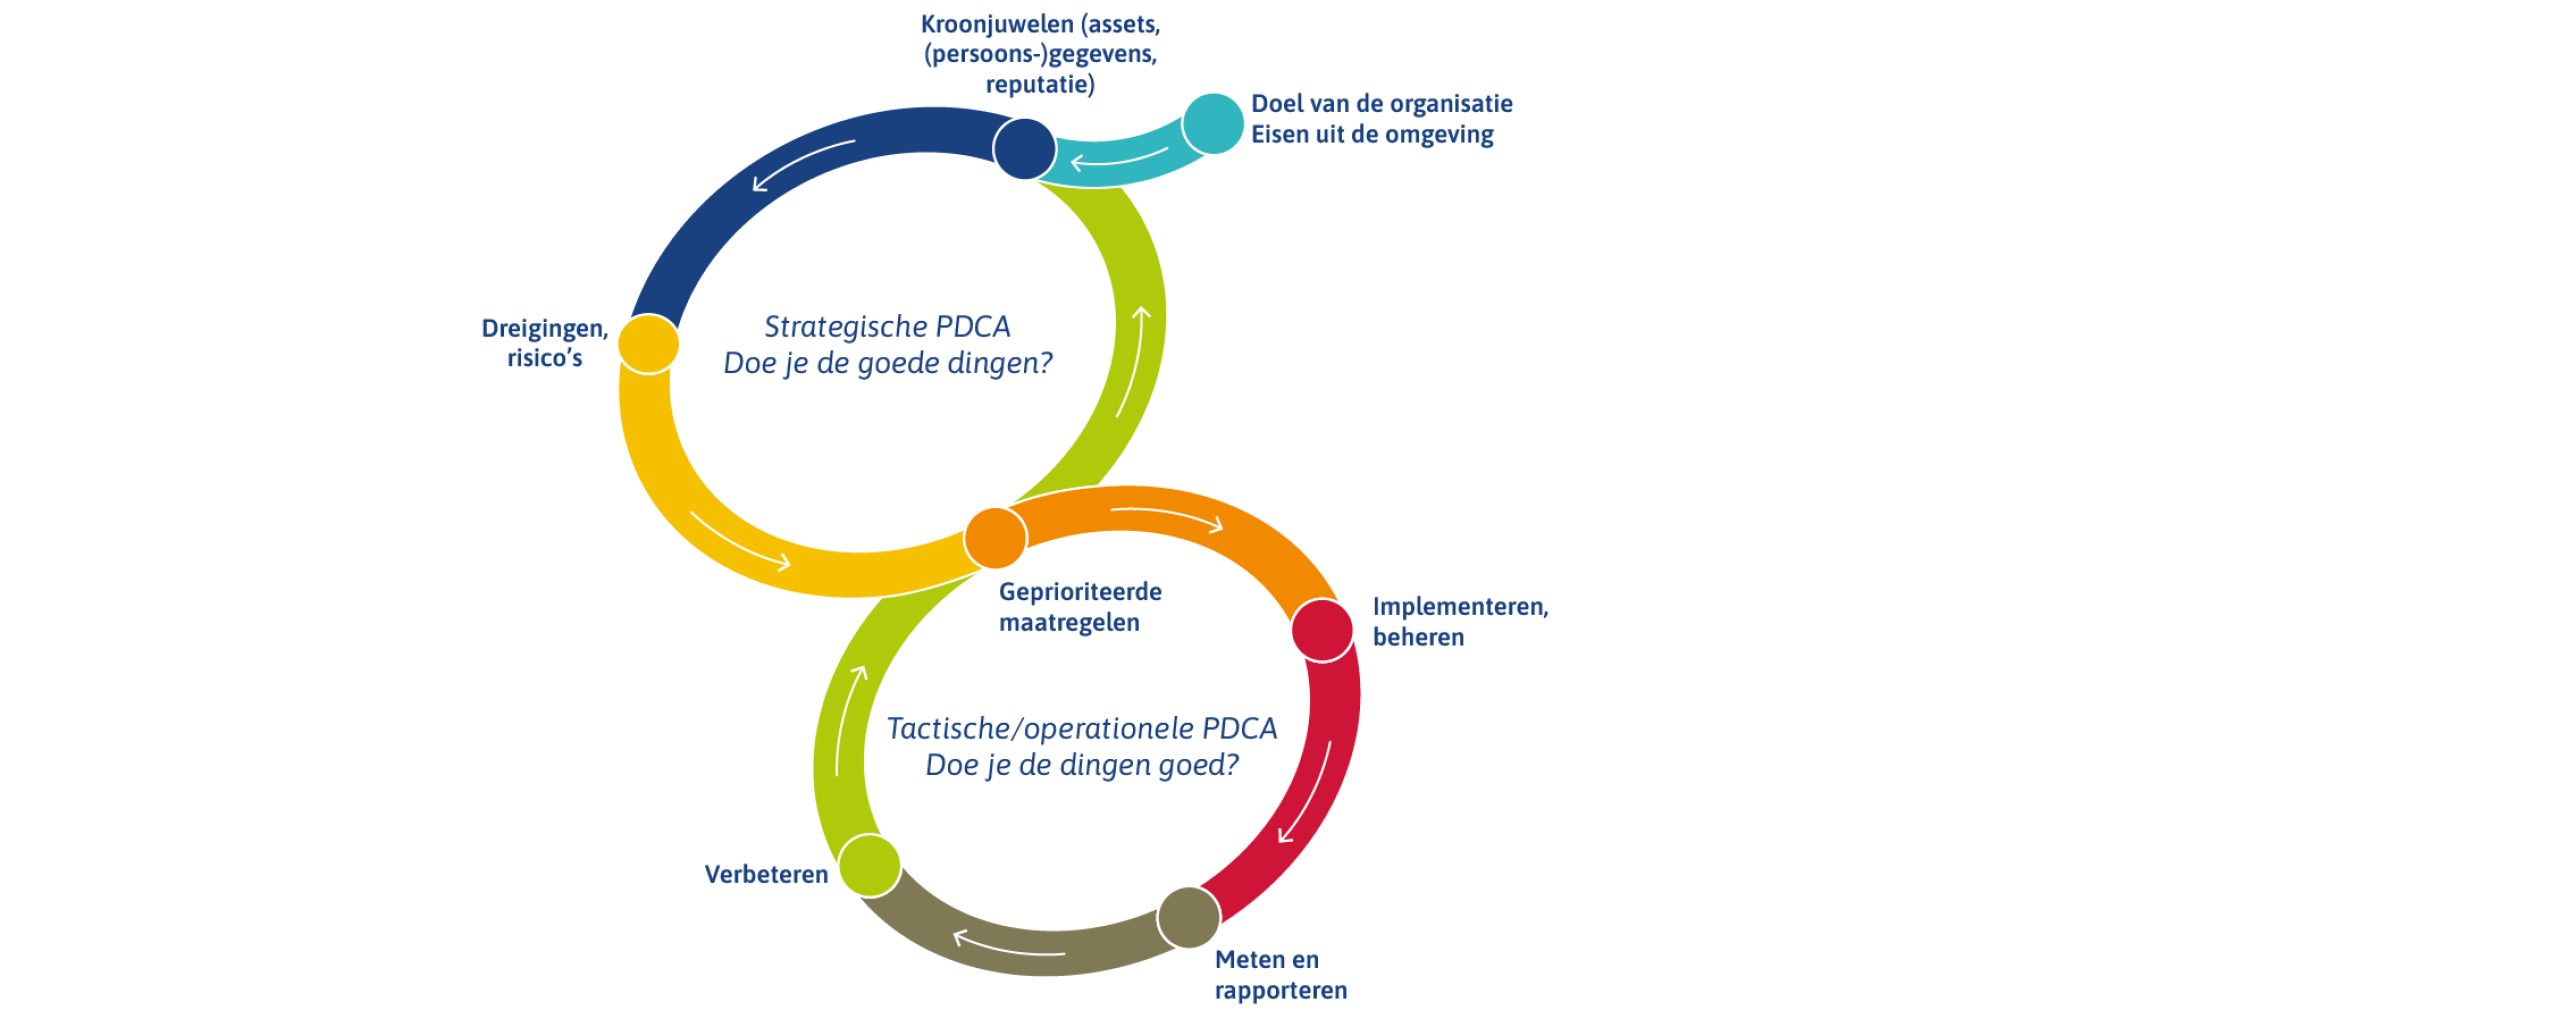 Er wordt een schema weergegeven in de vorm van een acht. De bovenste cirkel geeft de strategische PDCA cyclus weer met de vraag doe je de goede dingen. De onderste cirkel geeft de tactische/operationele PDCA cyclus weer met de vraag doe je de dingen goed?